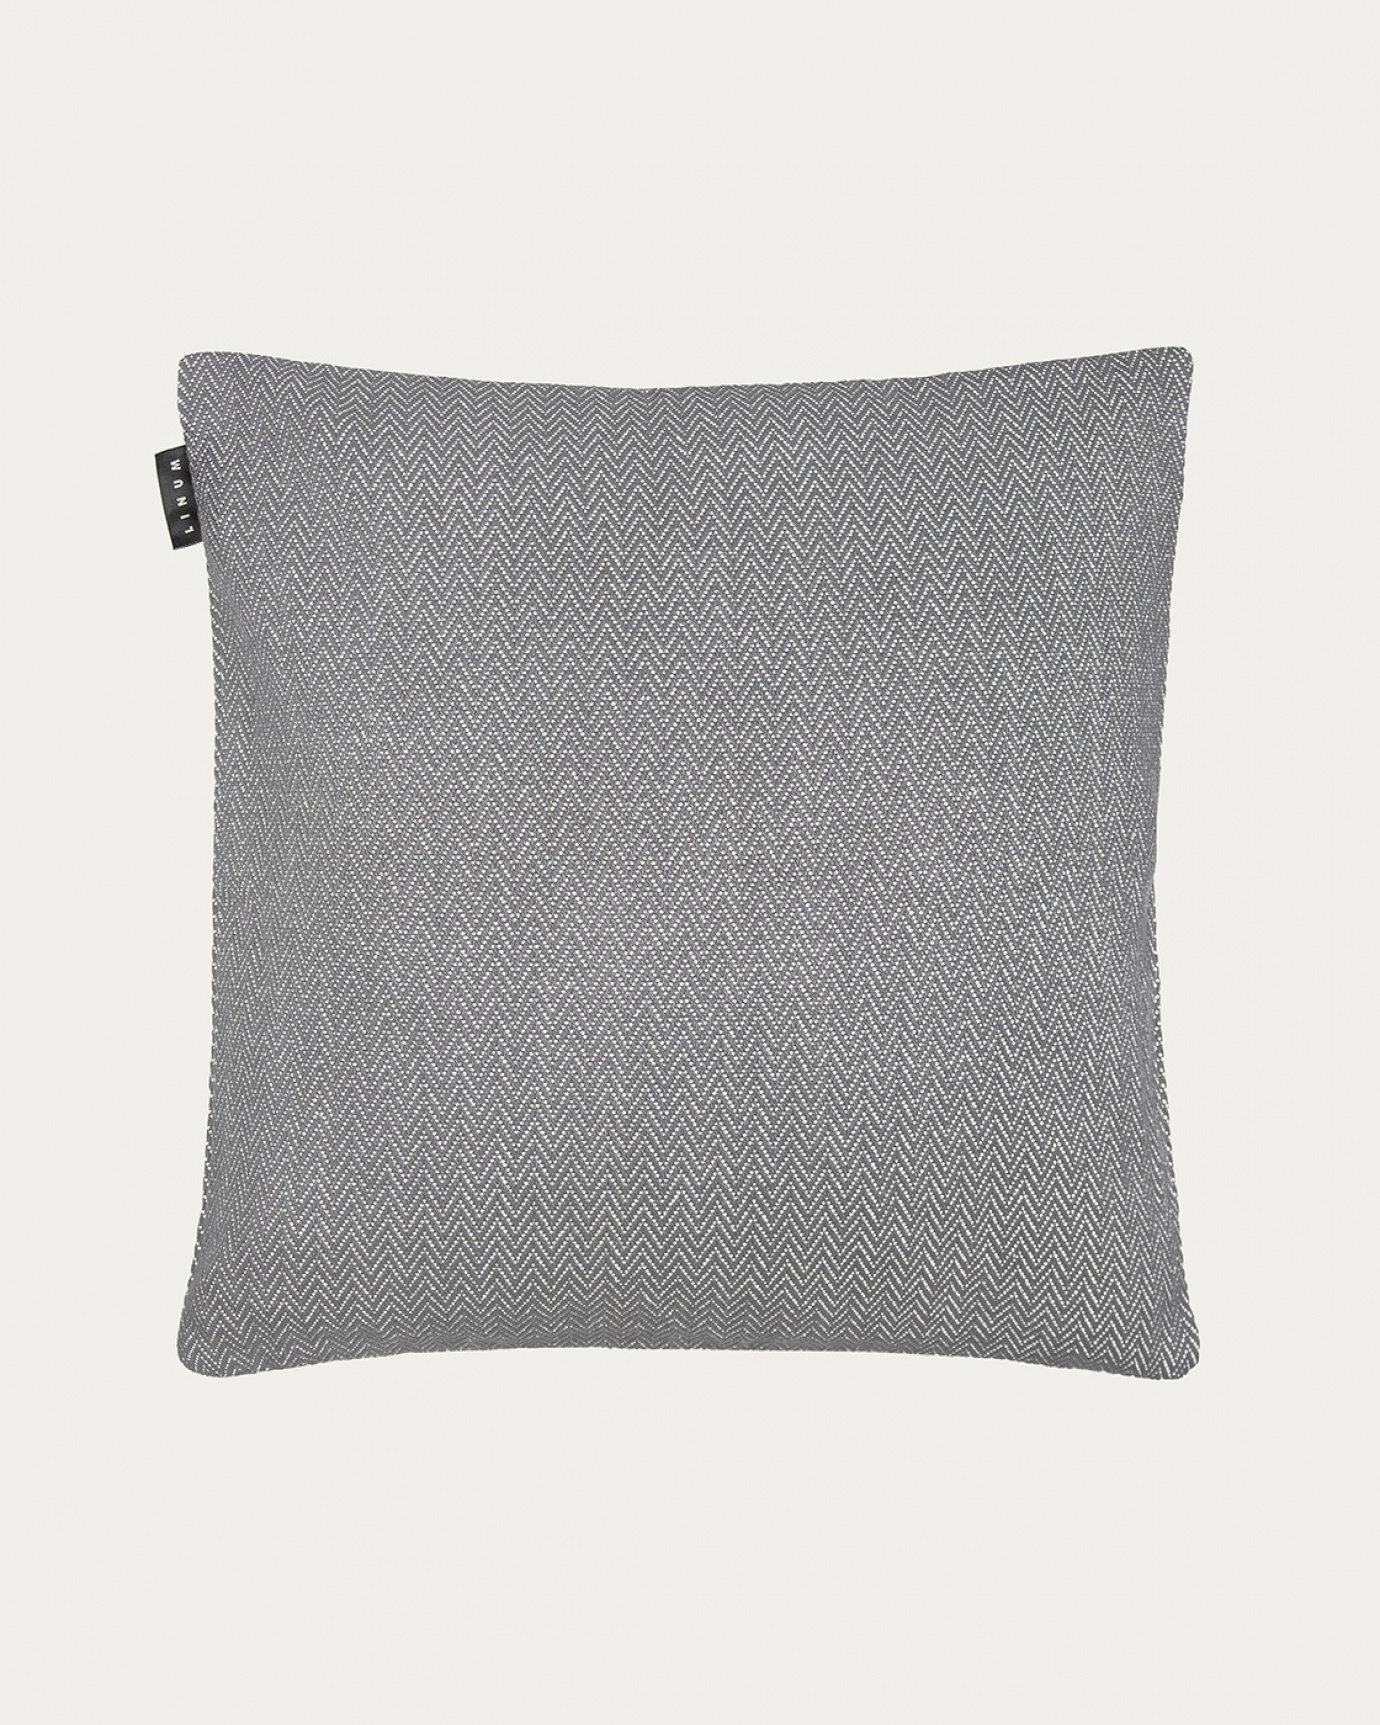 Image du produit housse de coussin SHEPARD gris foncé en coton doux avec un motif à chevrons discret de LINUM DESIGN. Taille 50 x 50 cm.